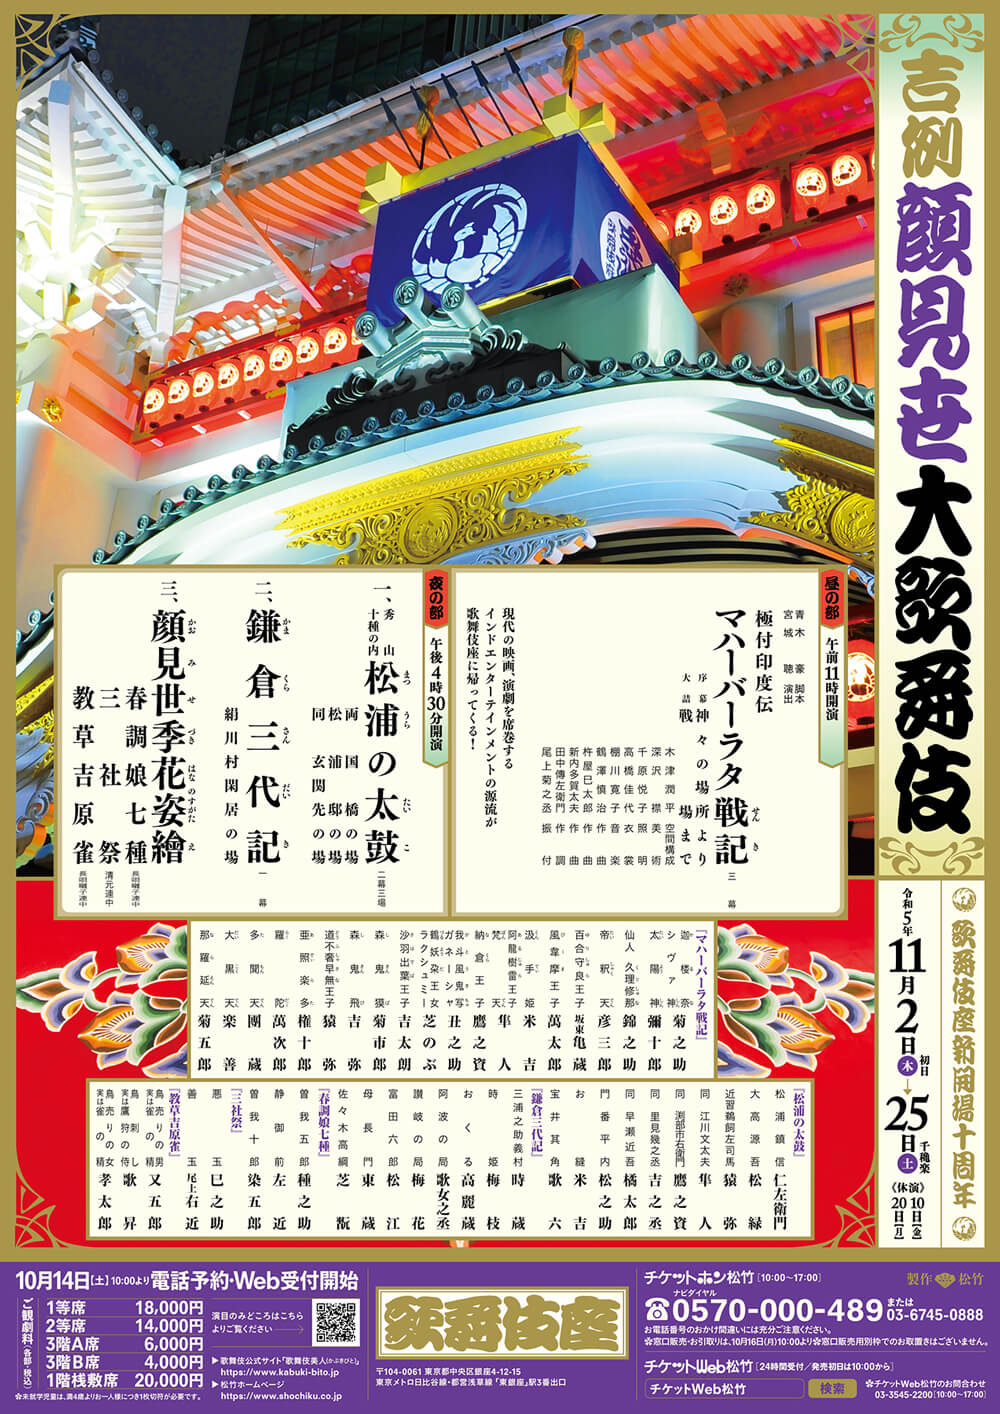 歌舞伎座11月『マハーバーラタ戦記』に菊五郎の出演決定